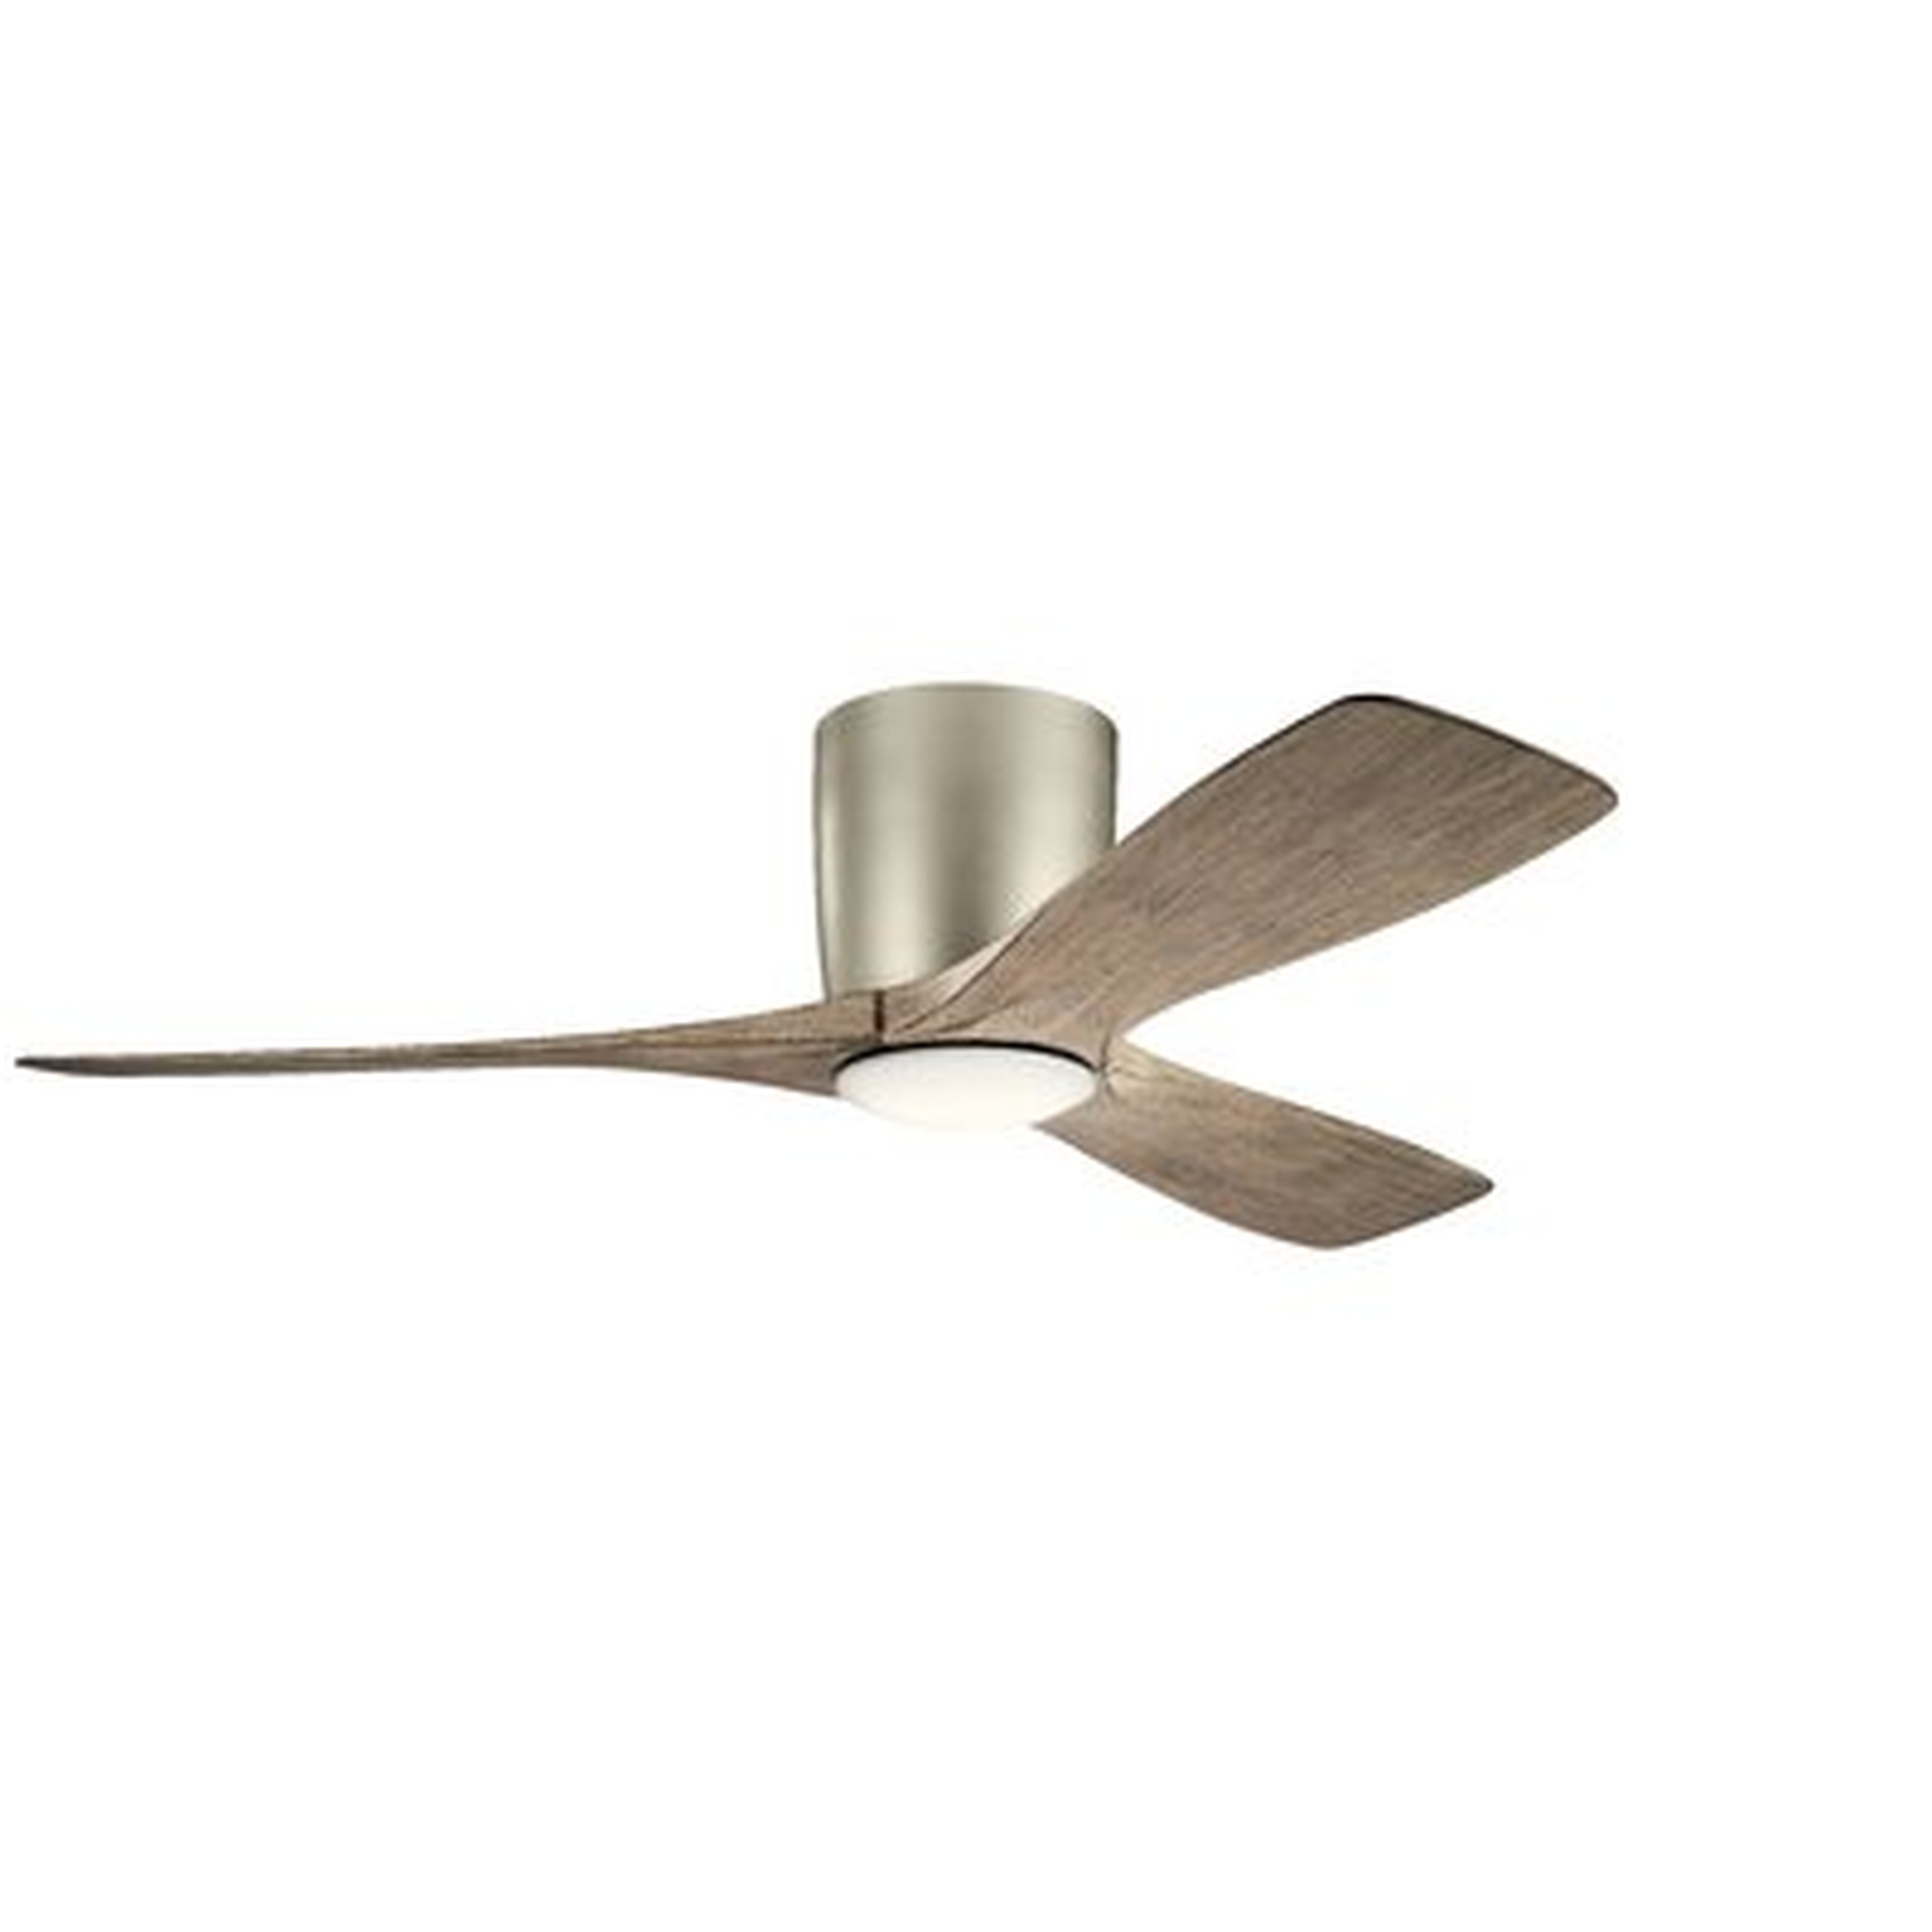 48" Mcgrew 3 Blade LED Ceiling Fan, Light Kit Included - Birch Lane